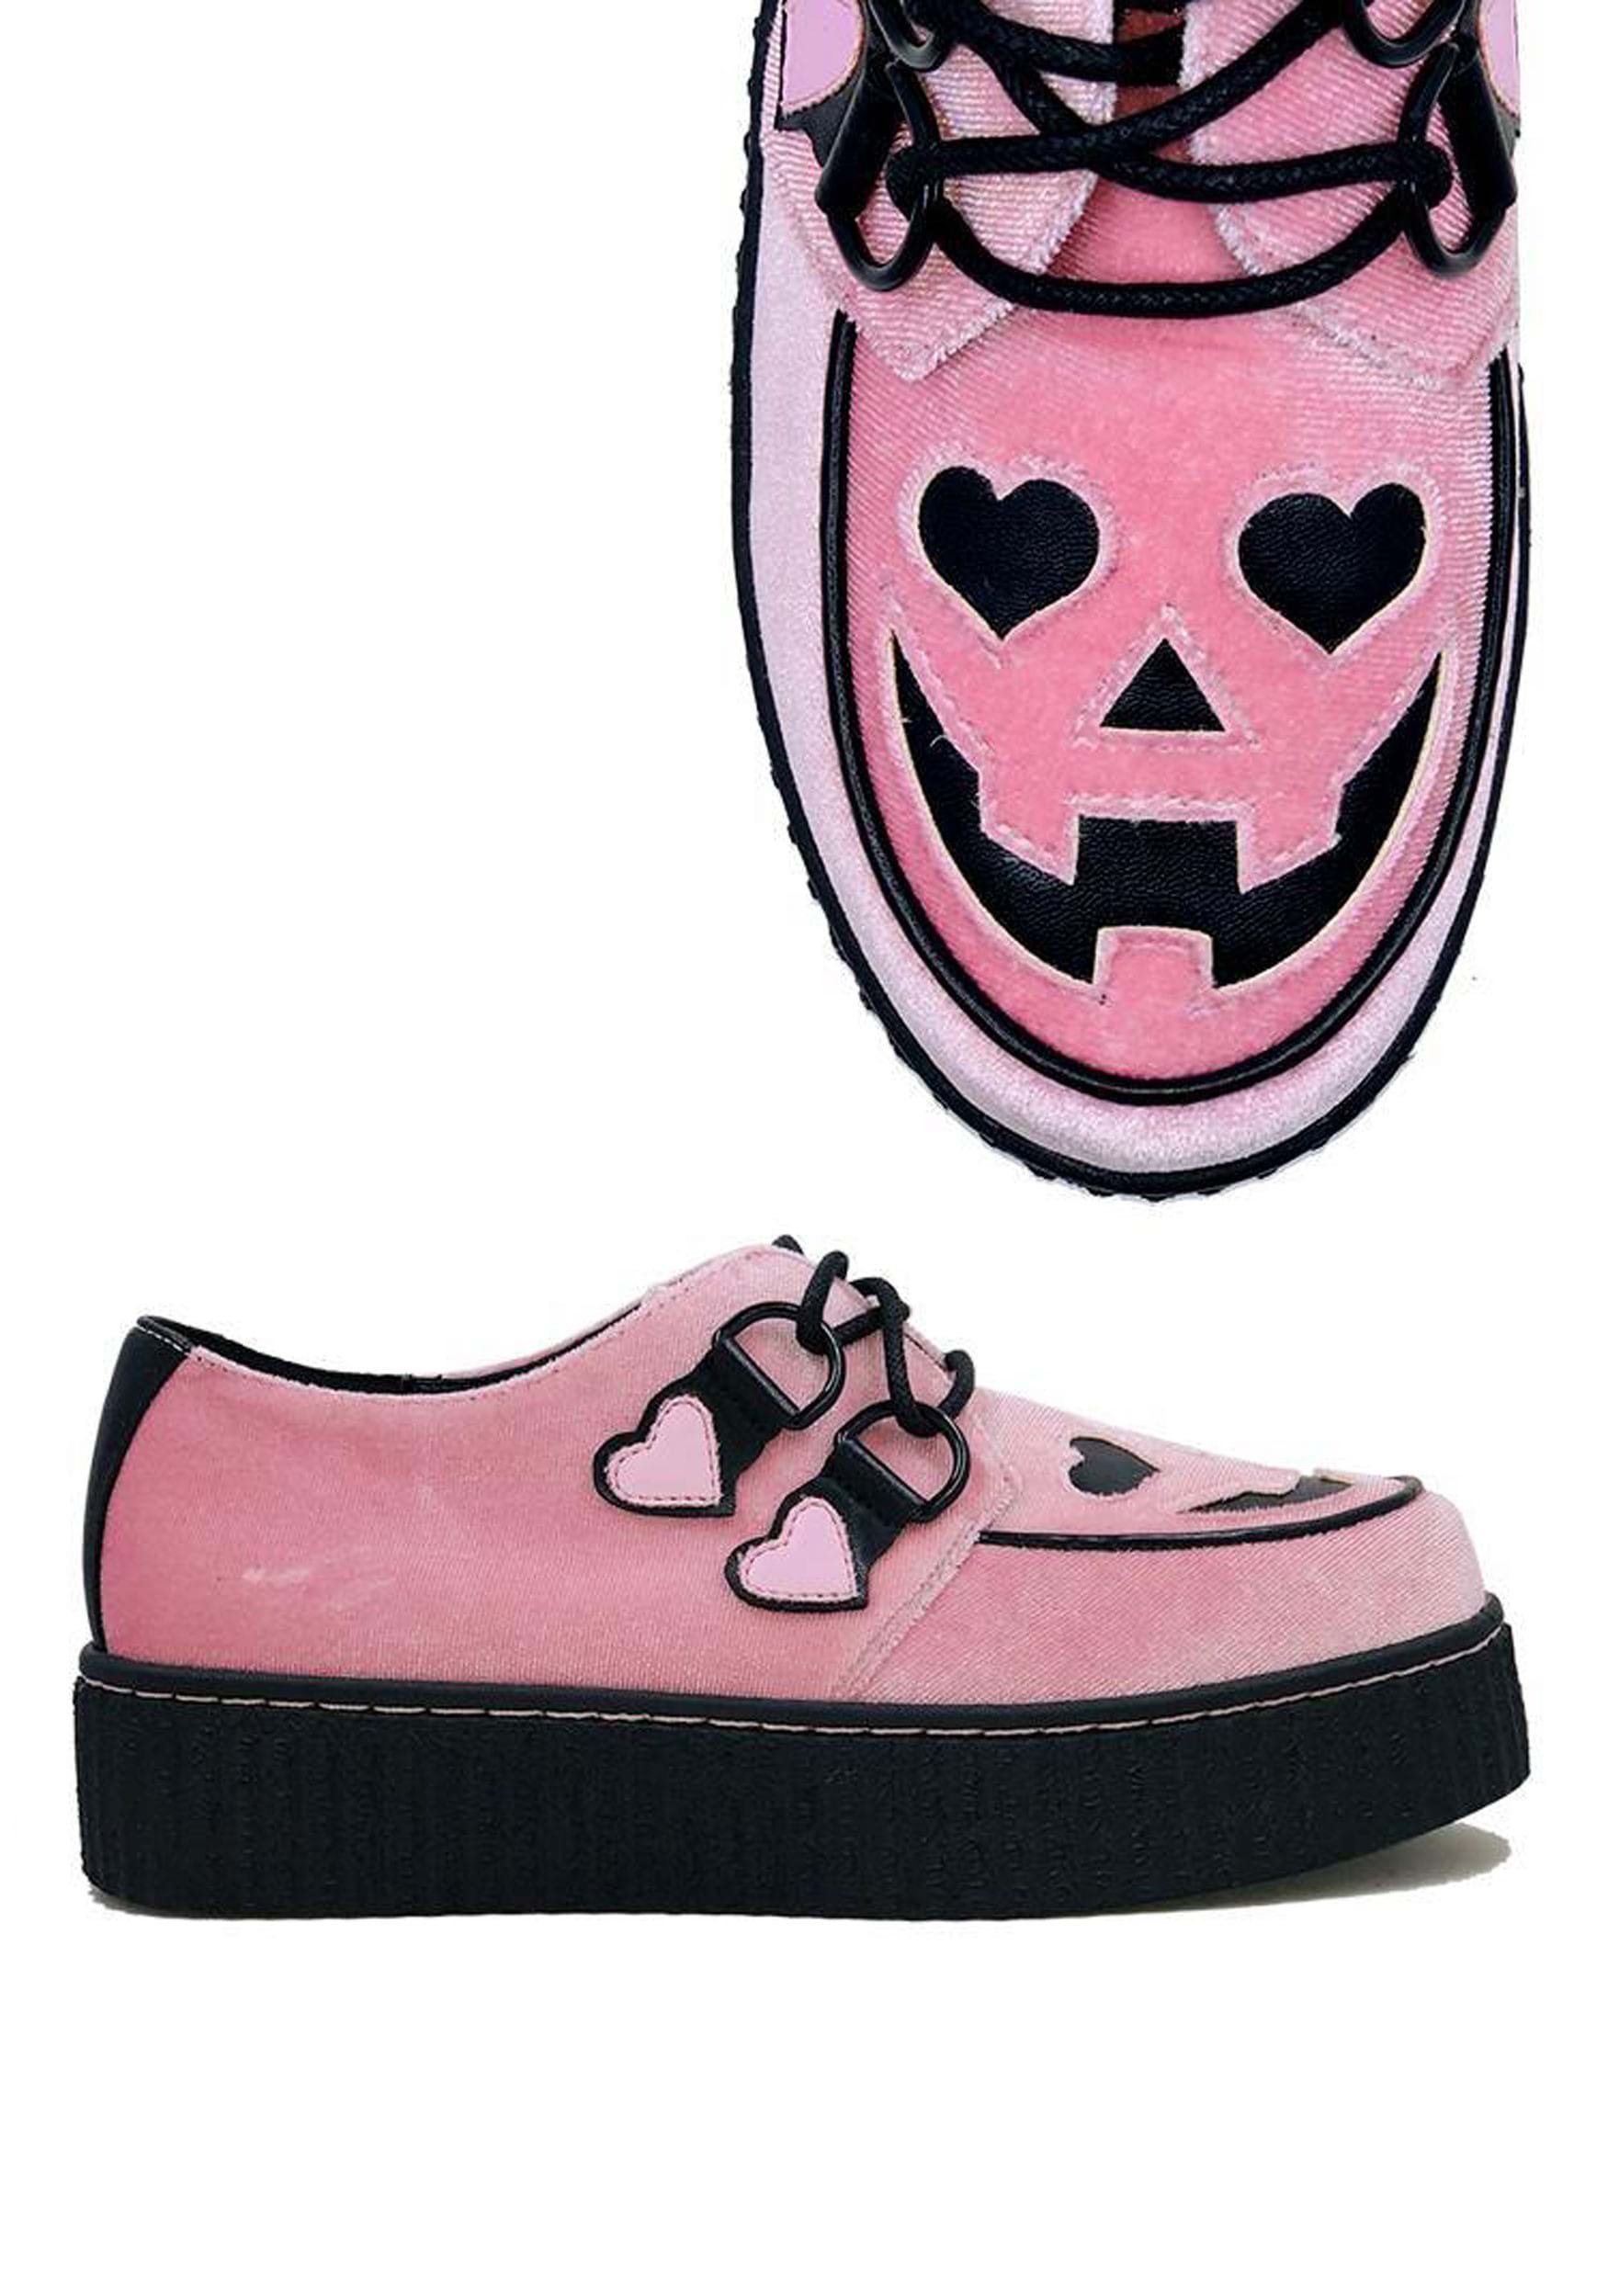 Image of Pink Velvet Jack O' Heart Creeper Shoe for Women ID SVKRYPTJACKHEART-PK-8